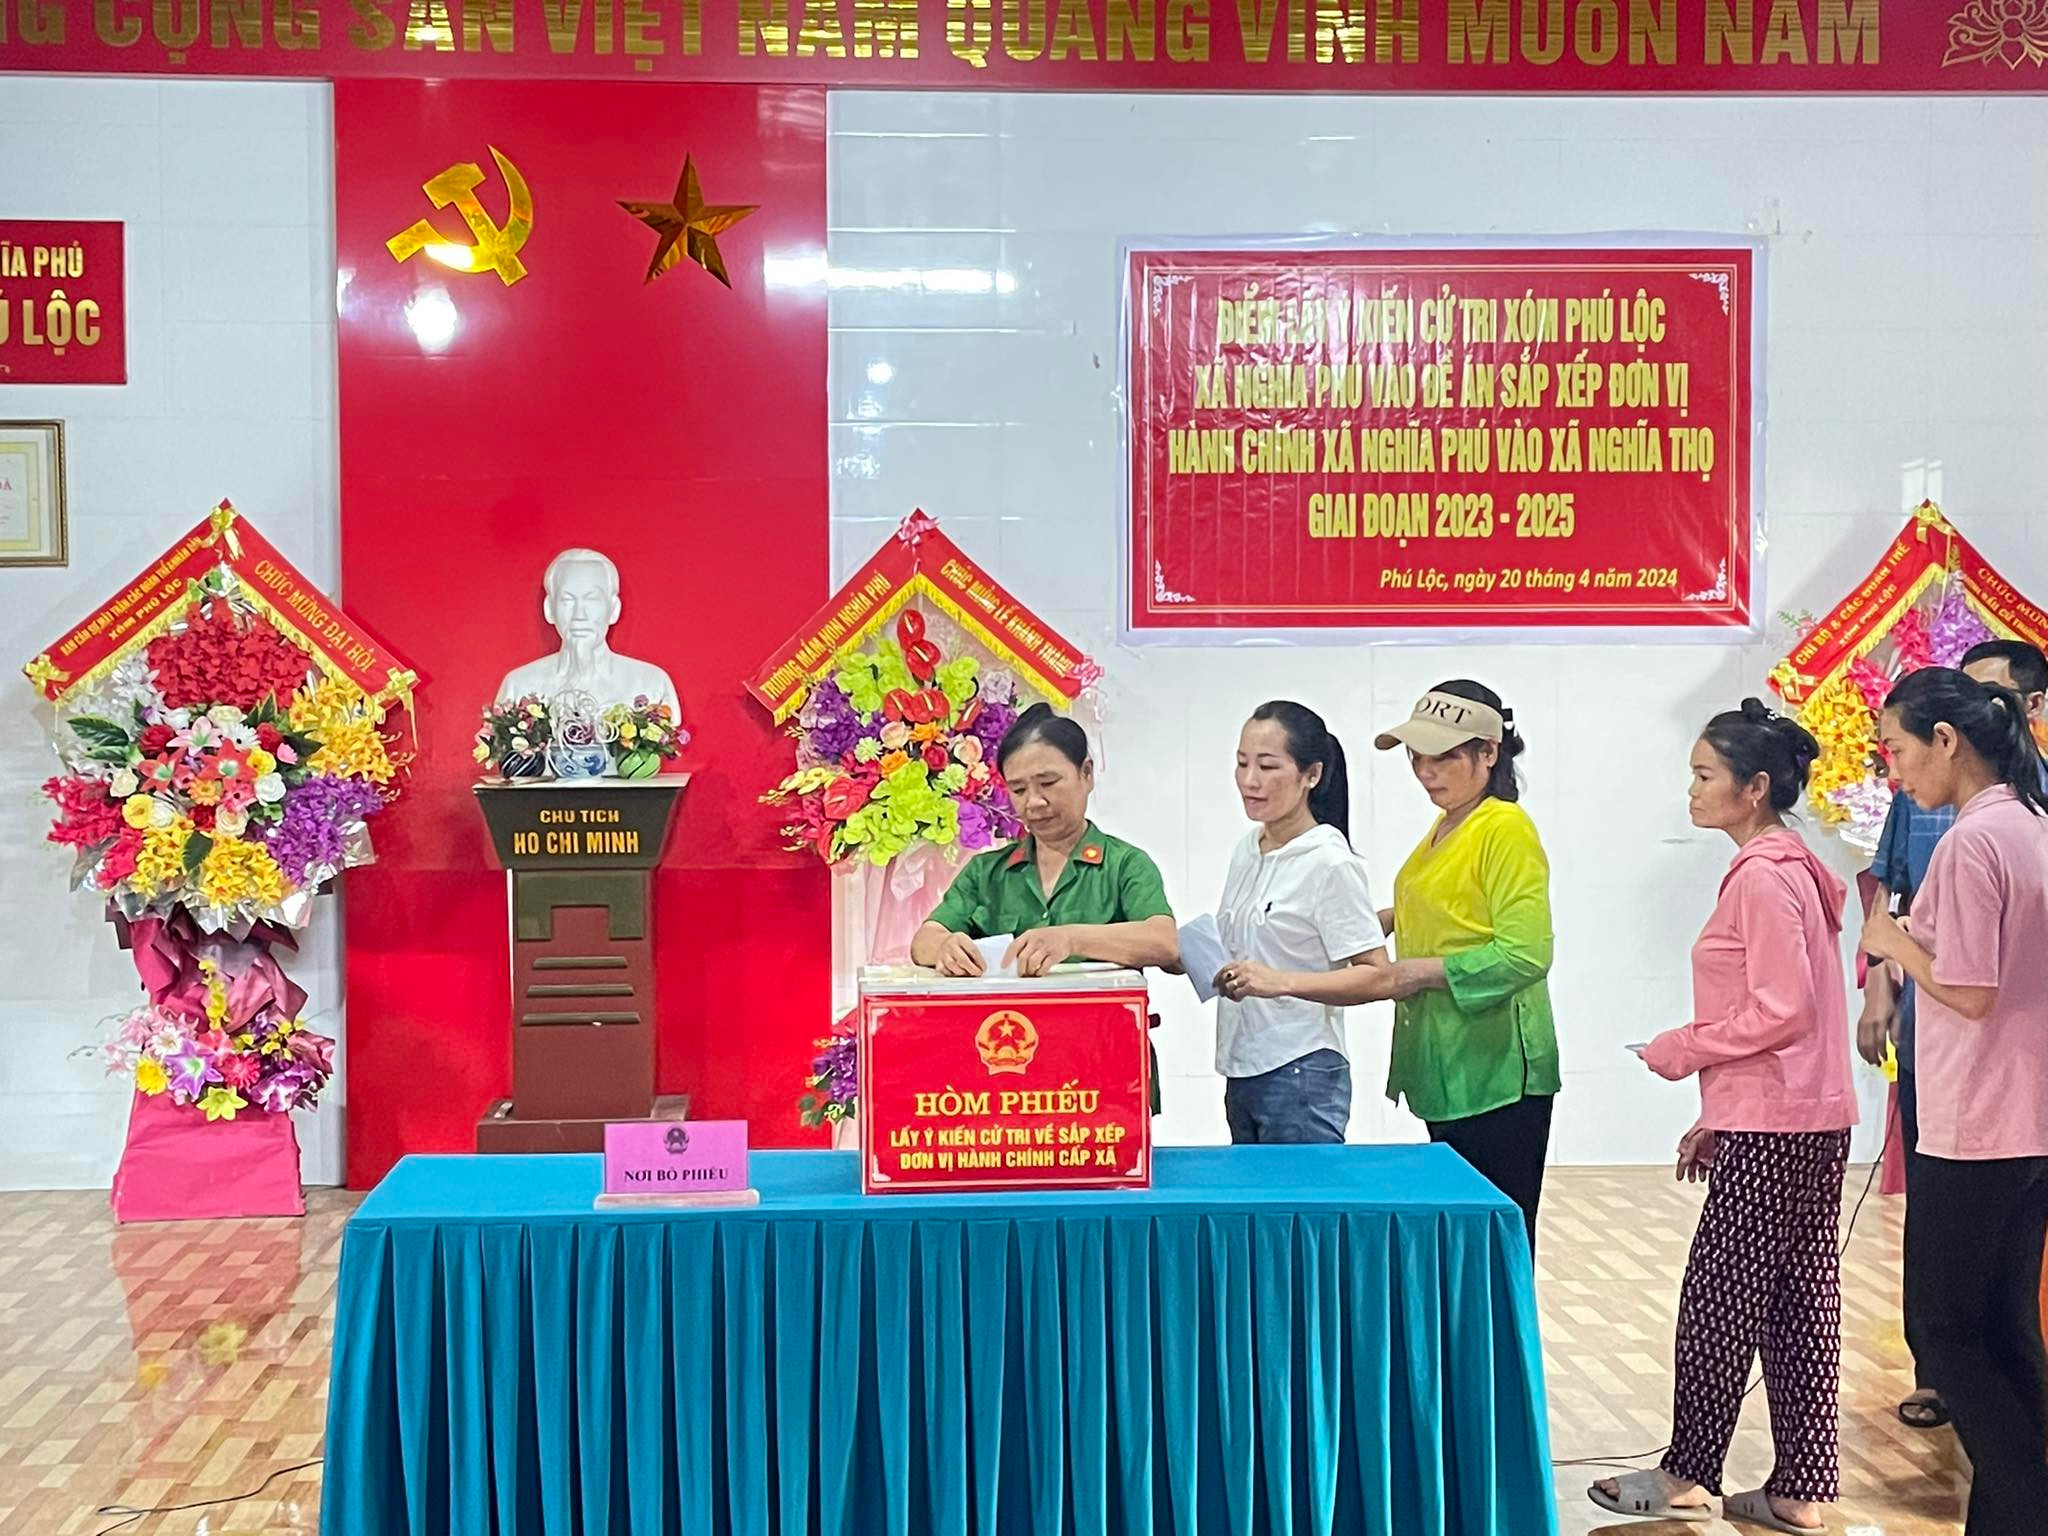 Bna-cử tri xã Nghĩa Phú bỏ phiếu lấy ý kiến về việc sắp xếp đơn vị hành chính.jpg